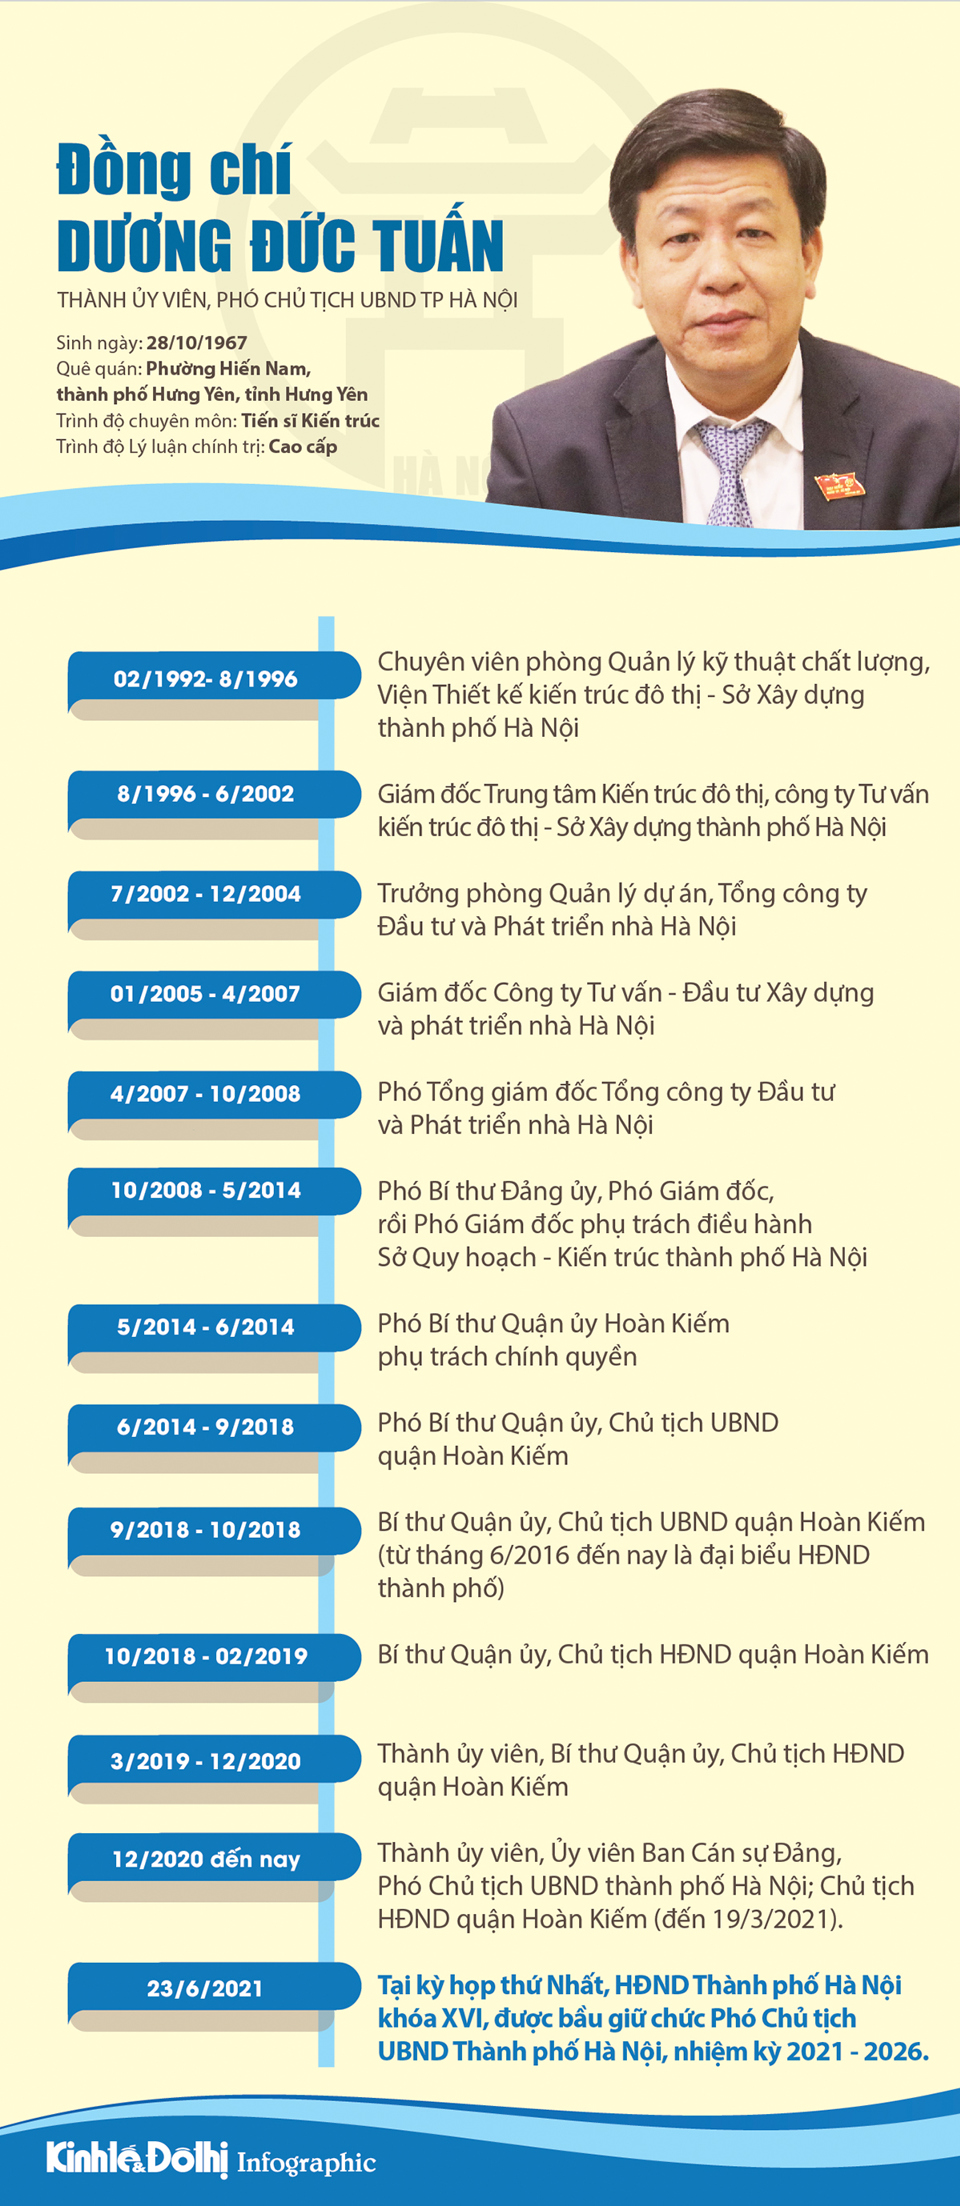 [Infographic] Chân dung Phó Chủ tịch UBND TP Hà Nội Dương Đức Tuấn - Ảnh 1